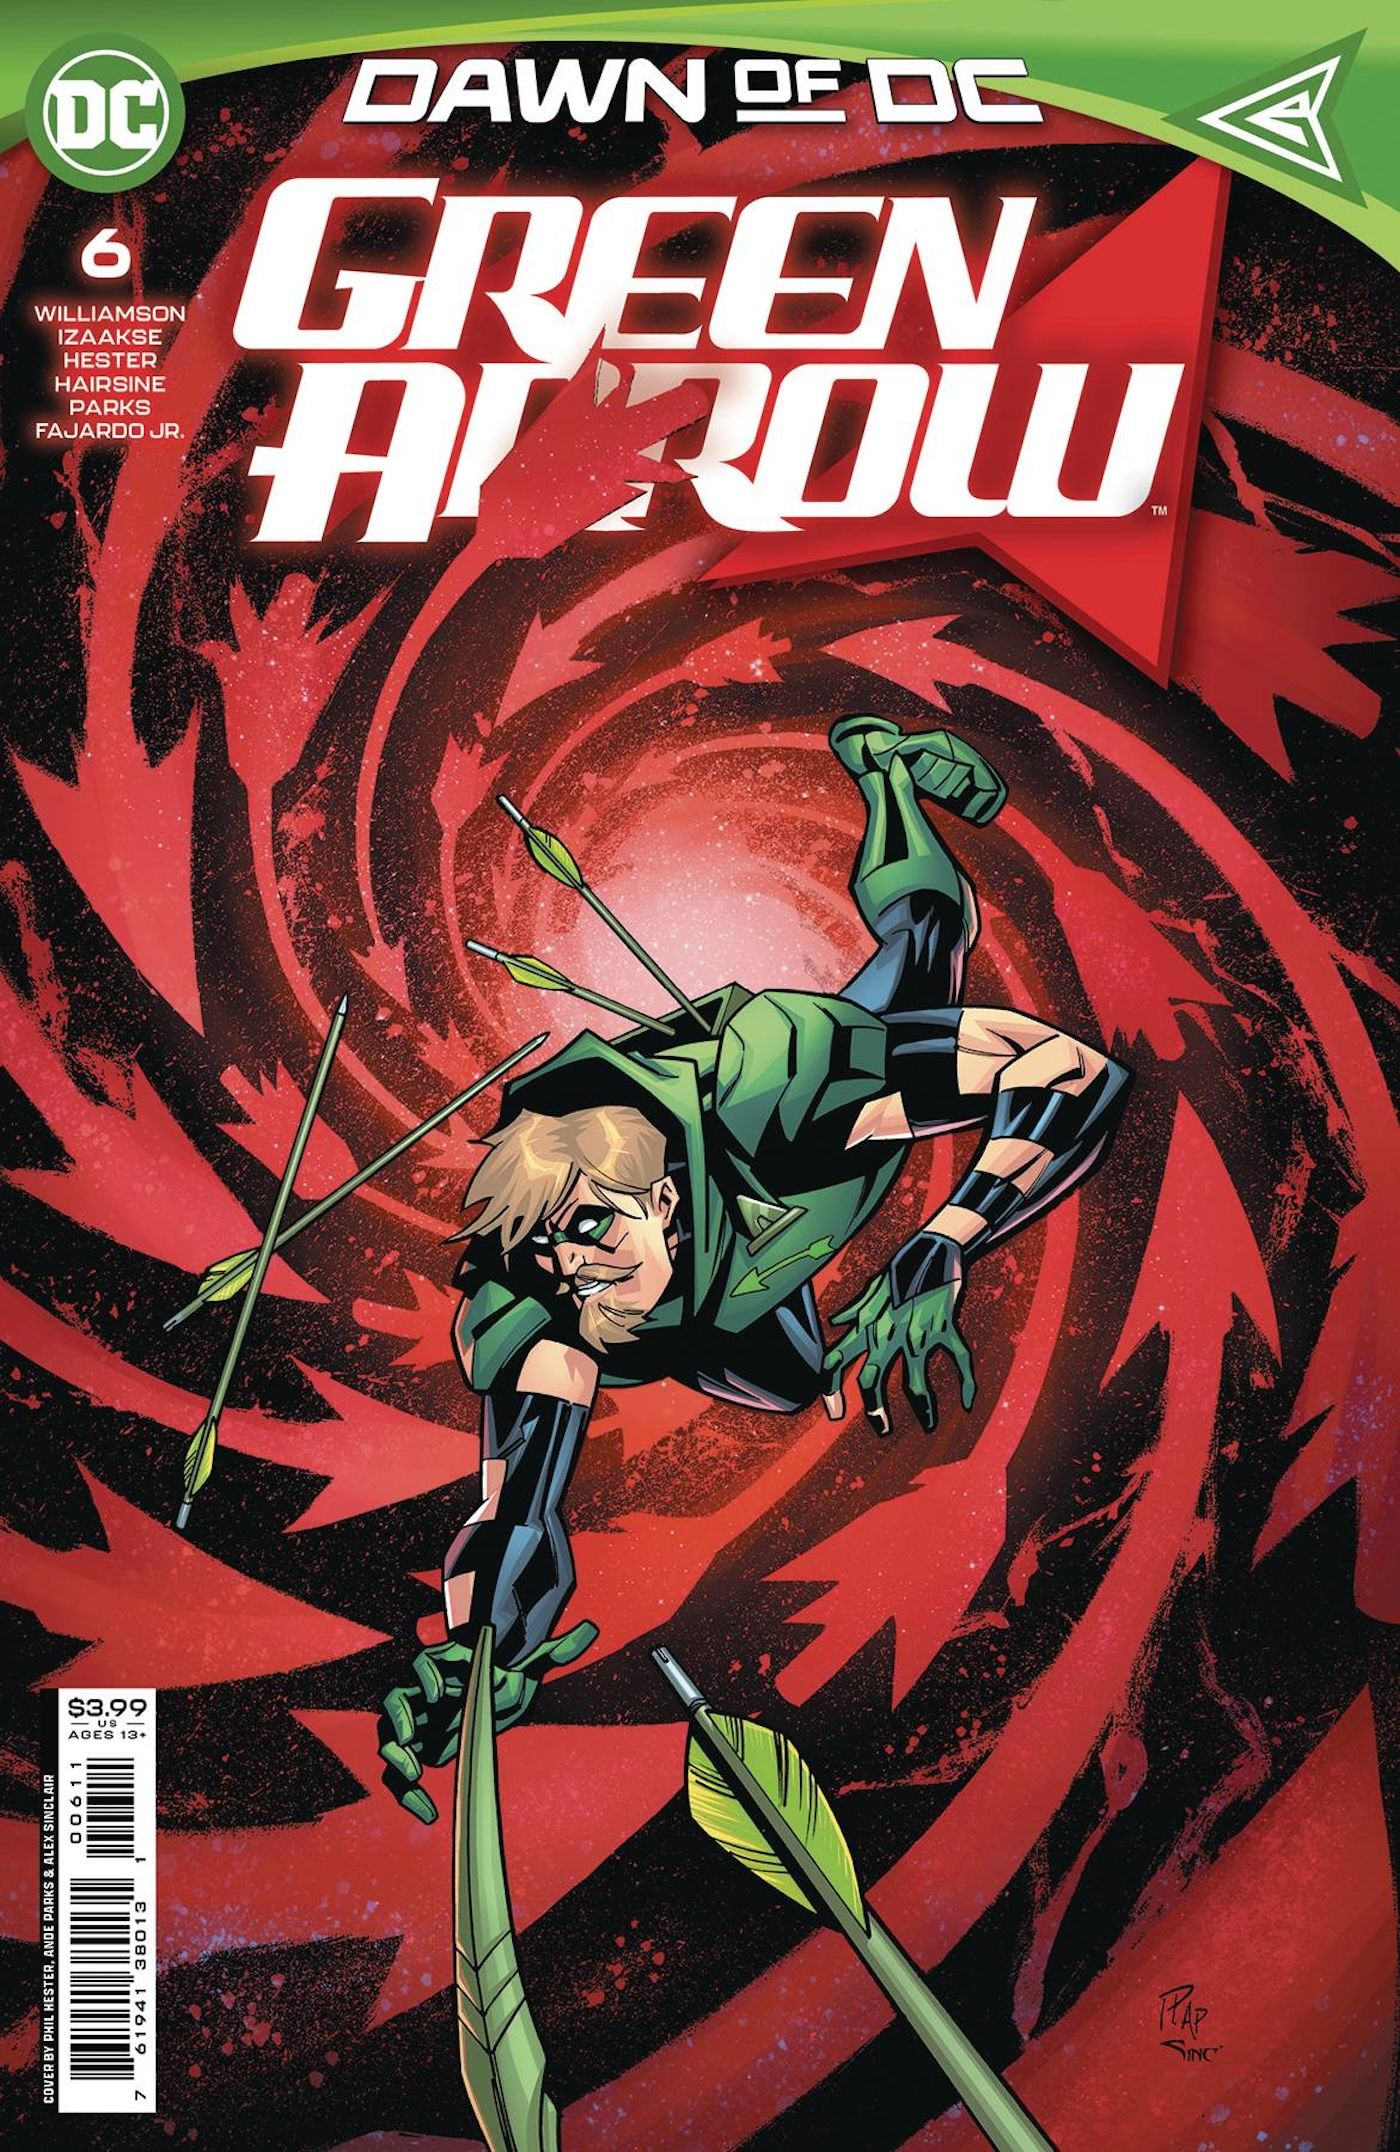 Portada principal de Green Arrow 6: Superhéroe disfrazado Green Arrow cayendo en un remolino rojo con flechas a su alrededor.